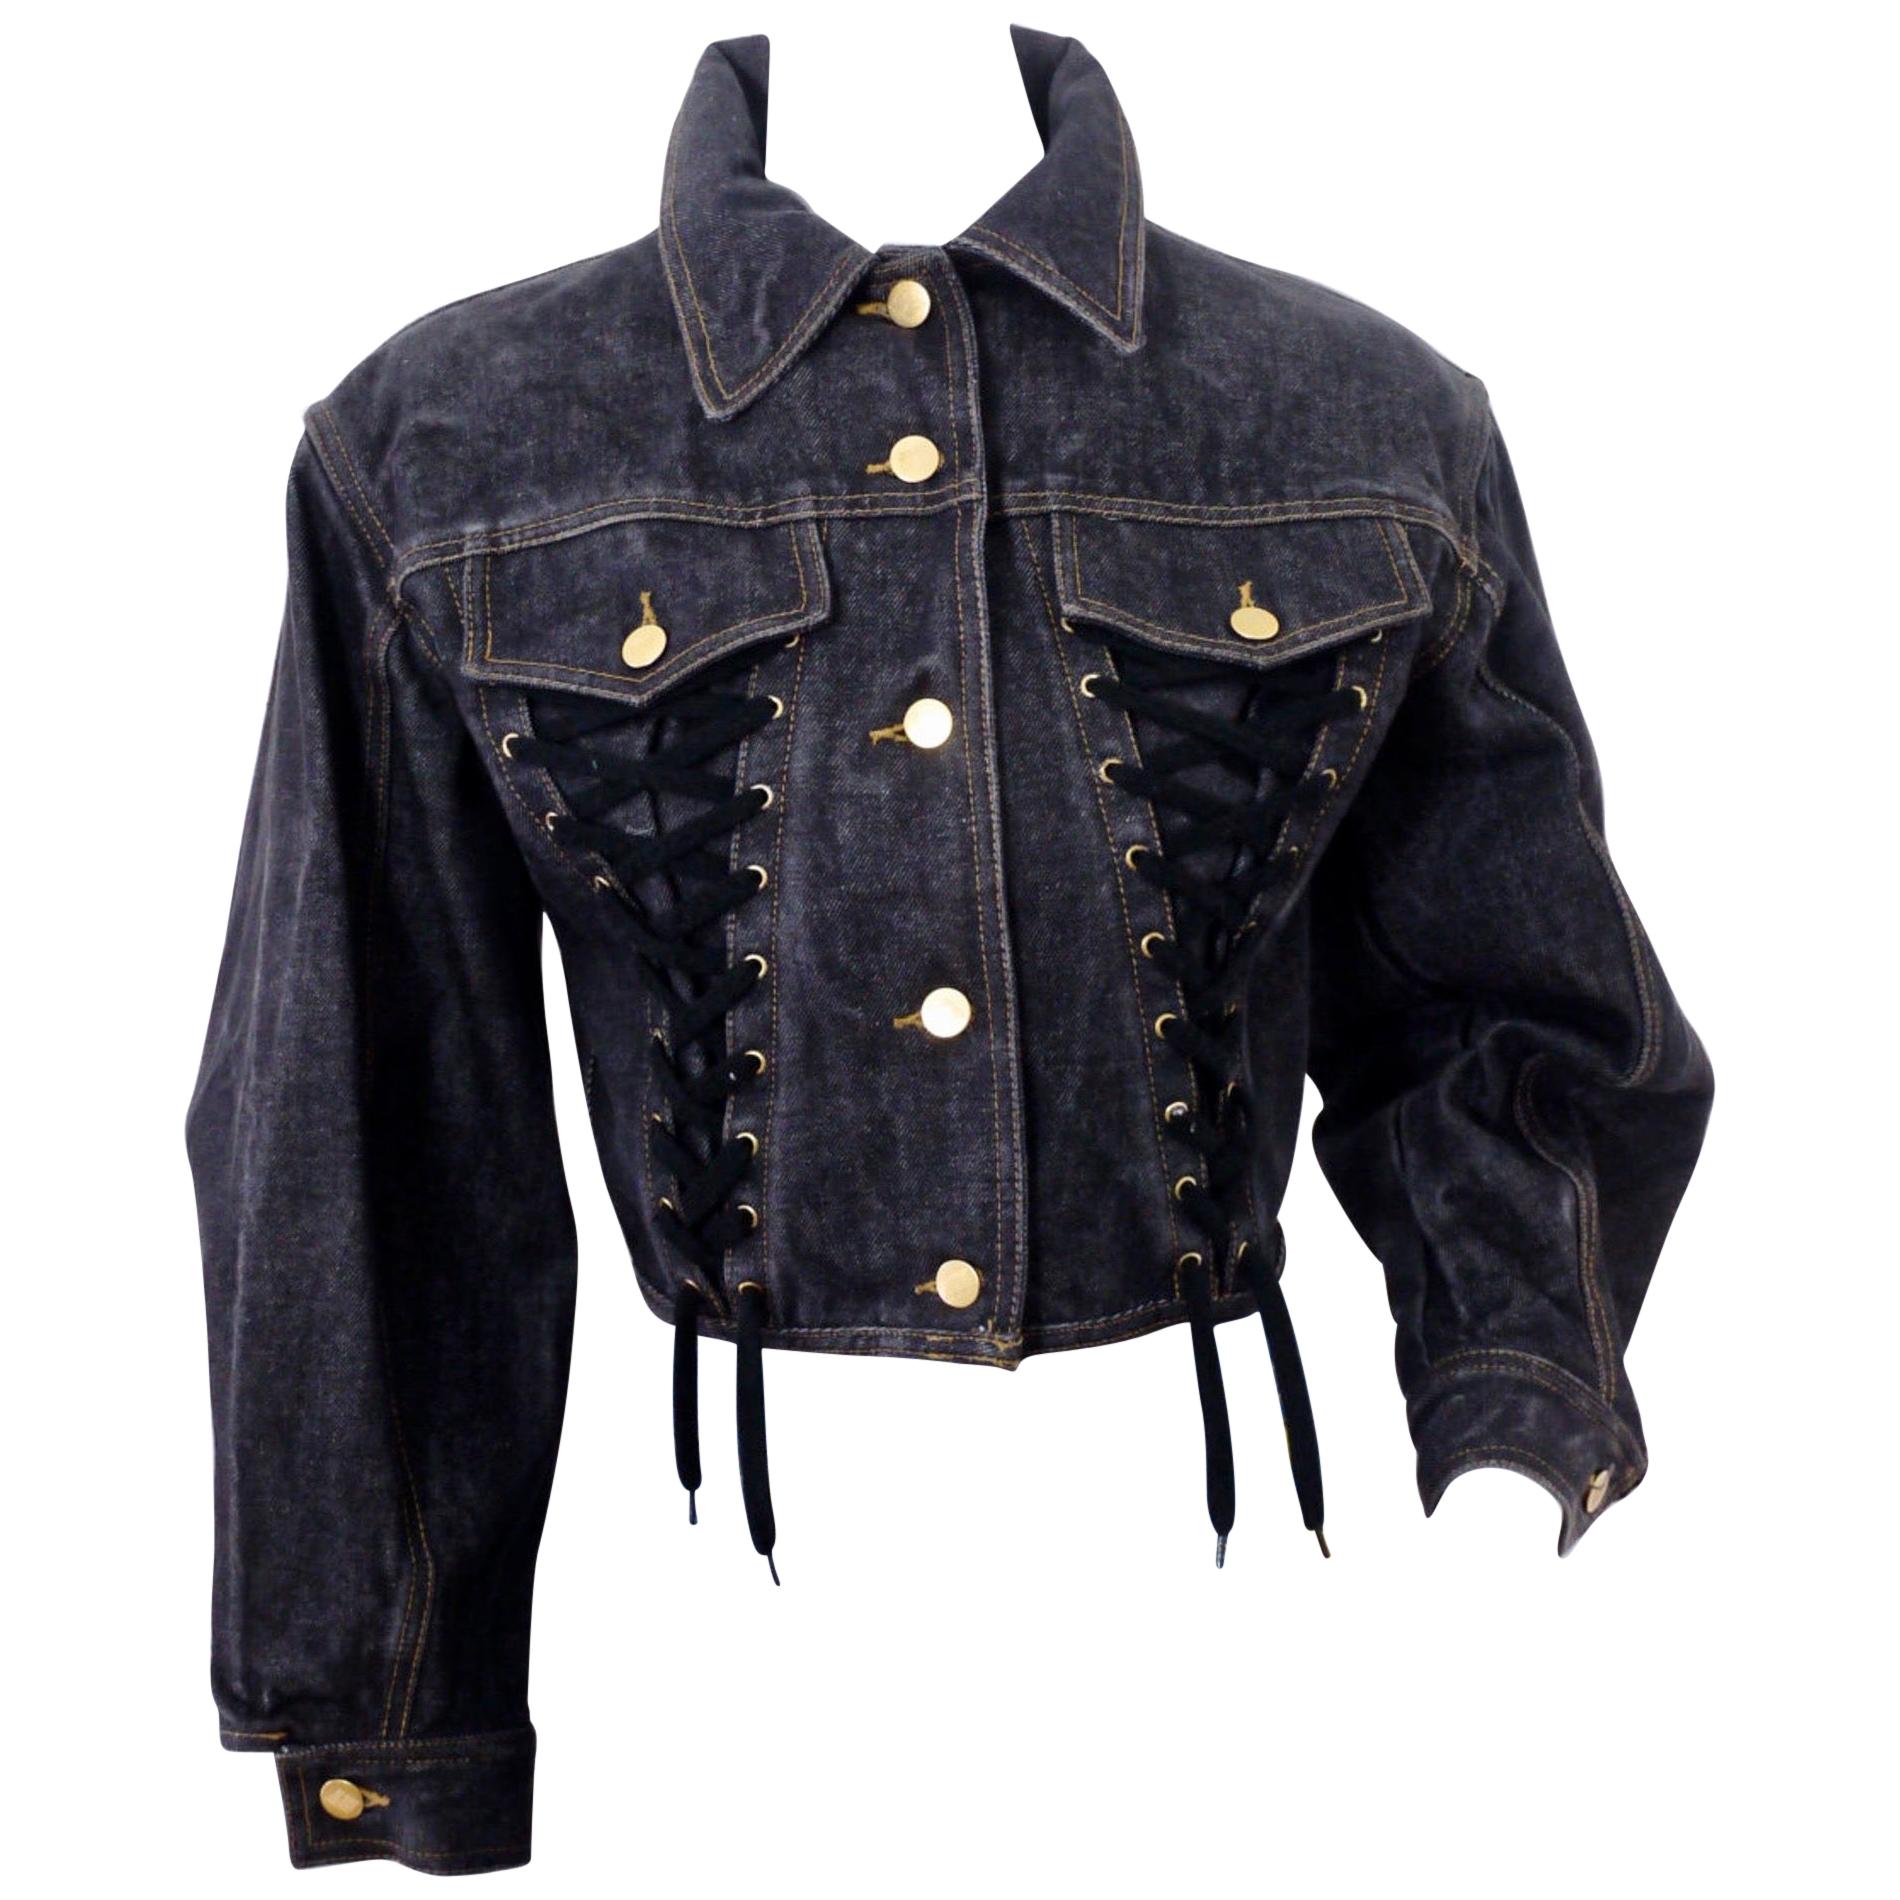 Vintage JEAN PAUL GAULTIER Corset Lace Up Denim Jacket